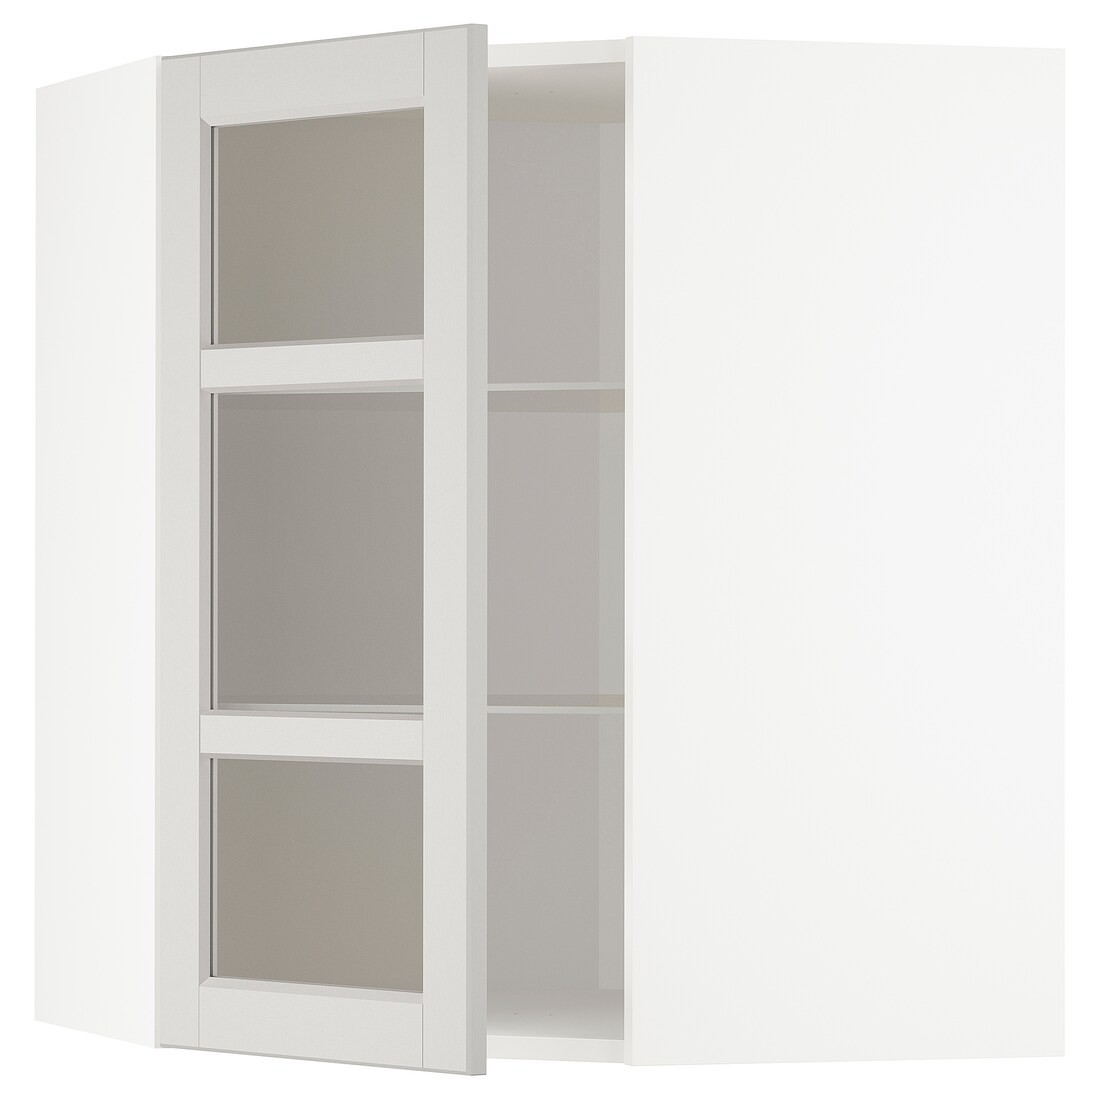 IKEA METOD МЕТОД Кутова настінна шафа з полицями / скляні двері, білий / Lerhyttan світло-сірий, 68x80 см 89274435 892.744.35